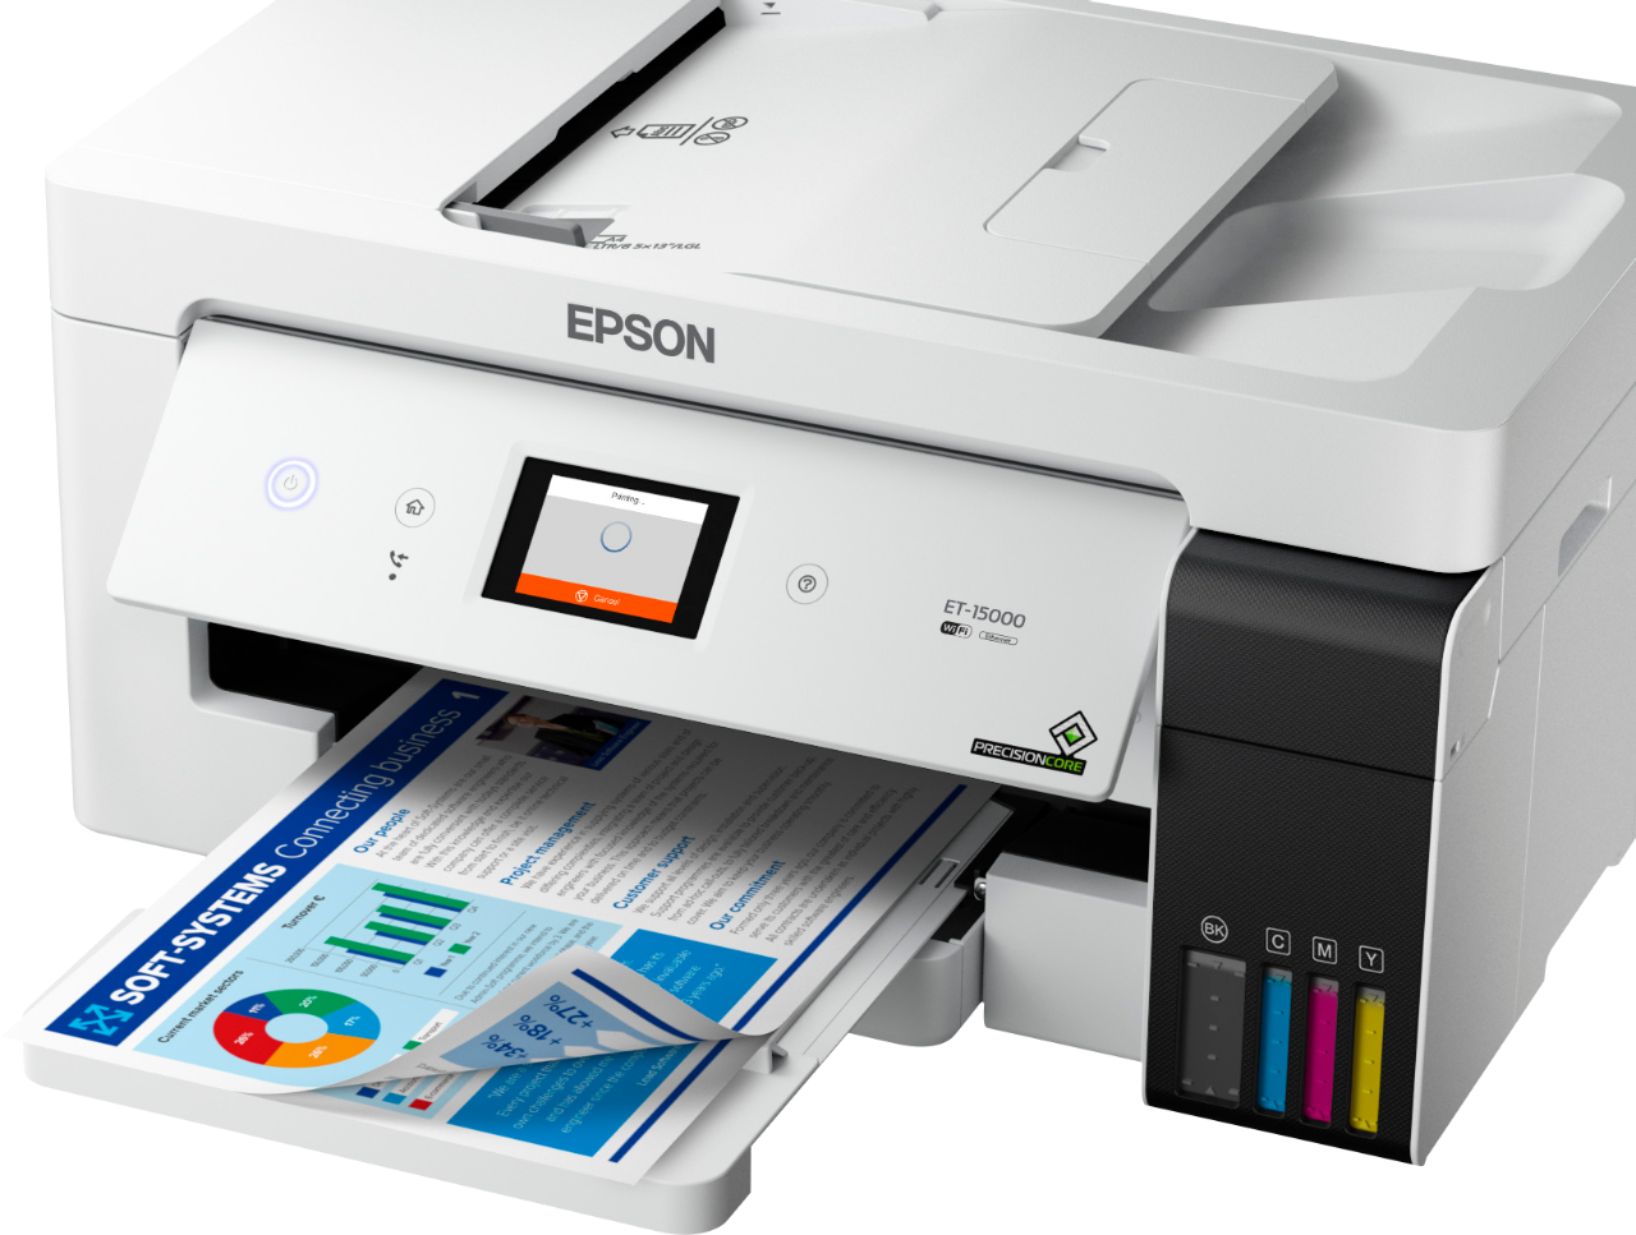 Epson EcoTank ET-15000 Impresora Supertank inalámbrica a color todo en uno  con escáner, copiadora, fax, Ethernet e impresión de hasta 13 x 19